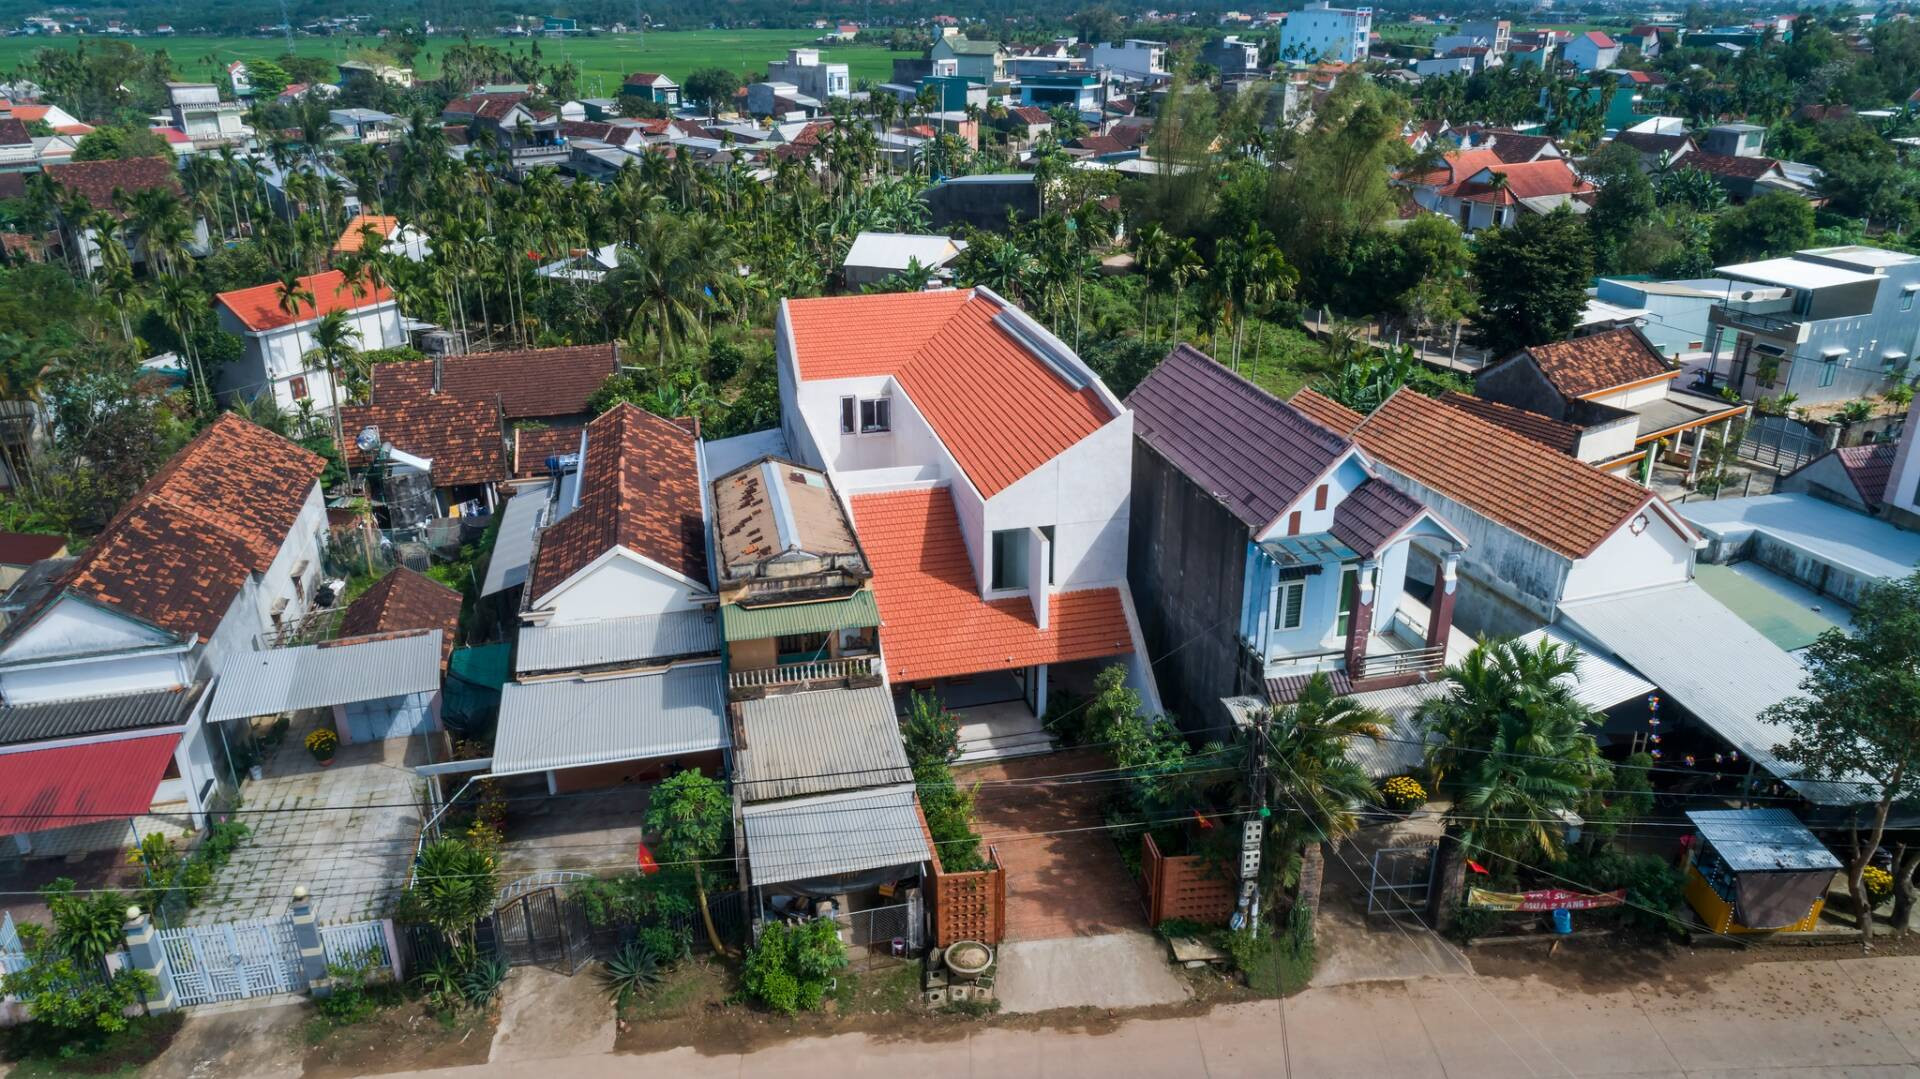 Ngôi nhà mái ngói đỏ mang nét xưa ở Quảng Ngãi, tái sử dụng nội thất cũ